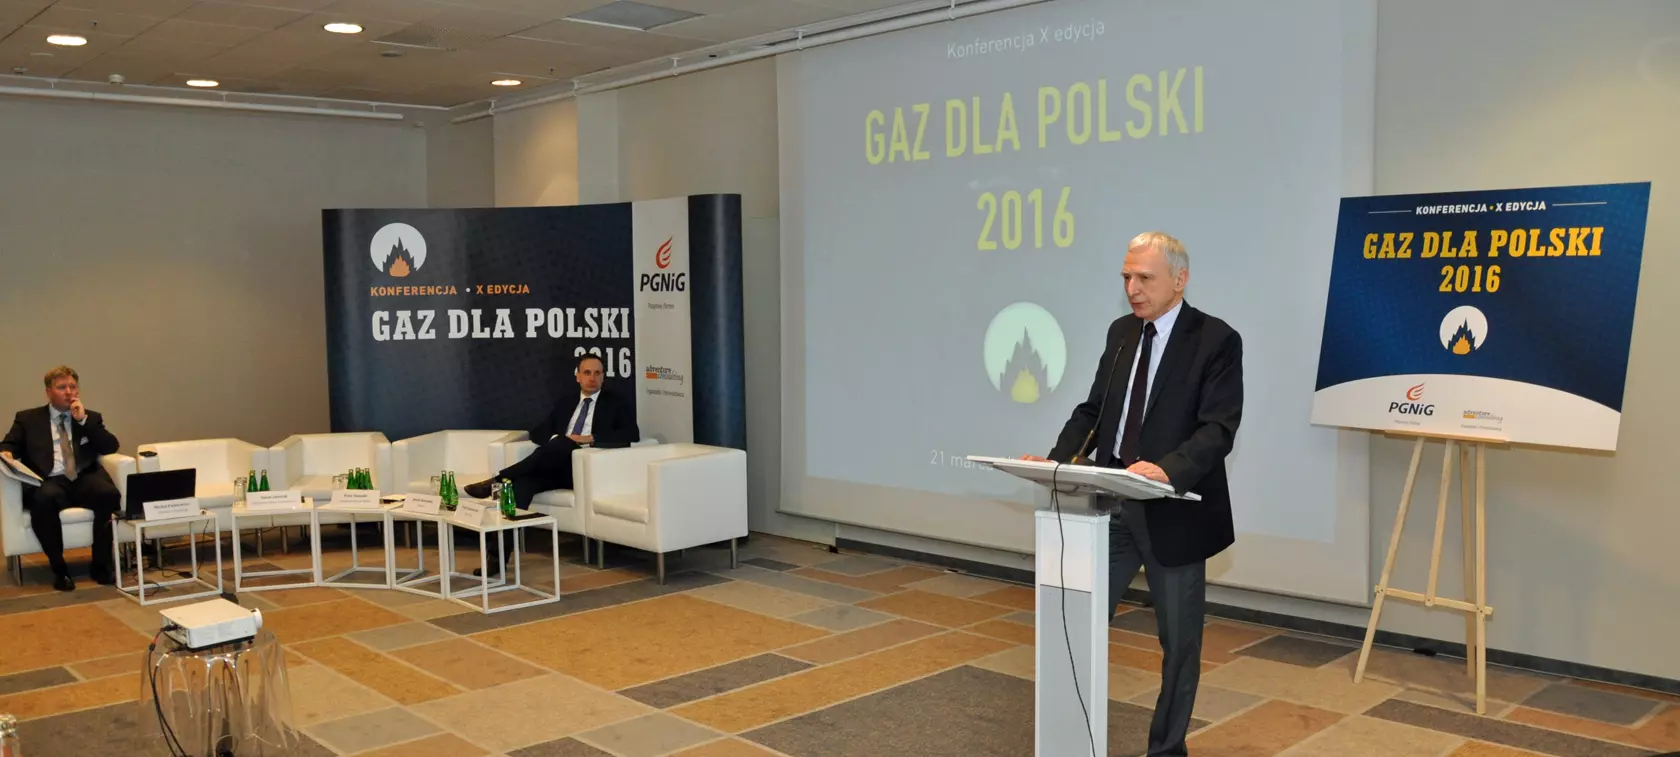 Zapraszamy na konferencję Gaz dla Polski 2017